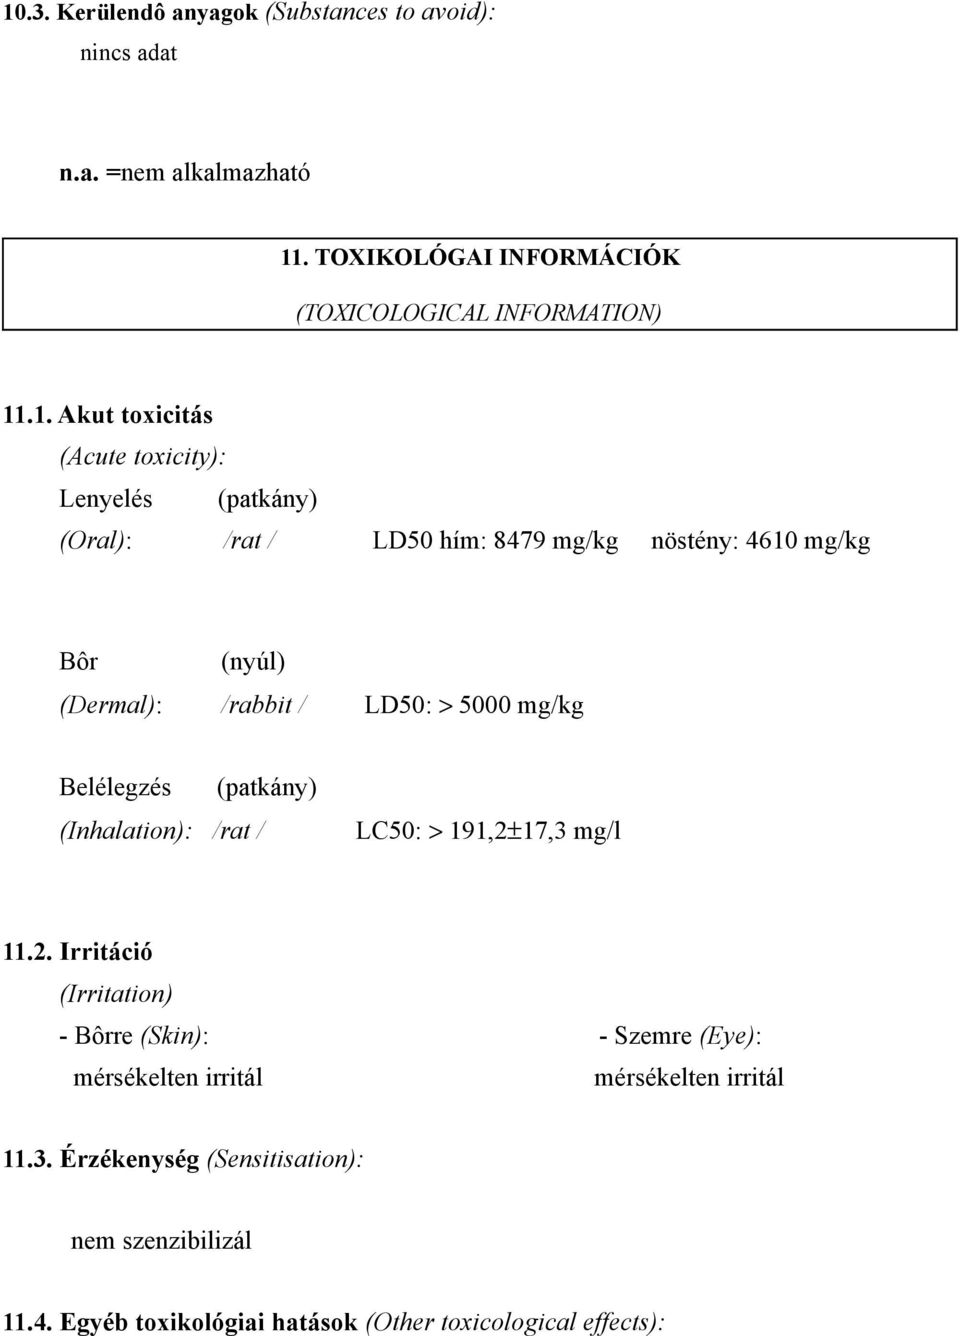 > 5000 mg/kg Belélegzés (Inhalation): /rat / (patkány) LC50: > 191,2±